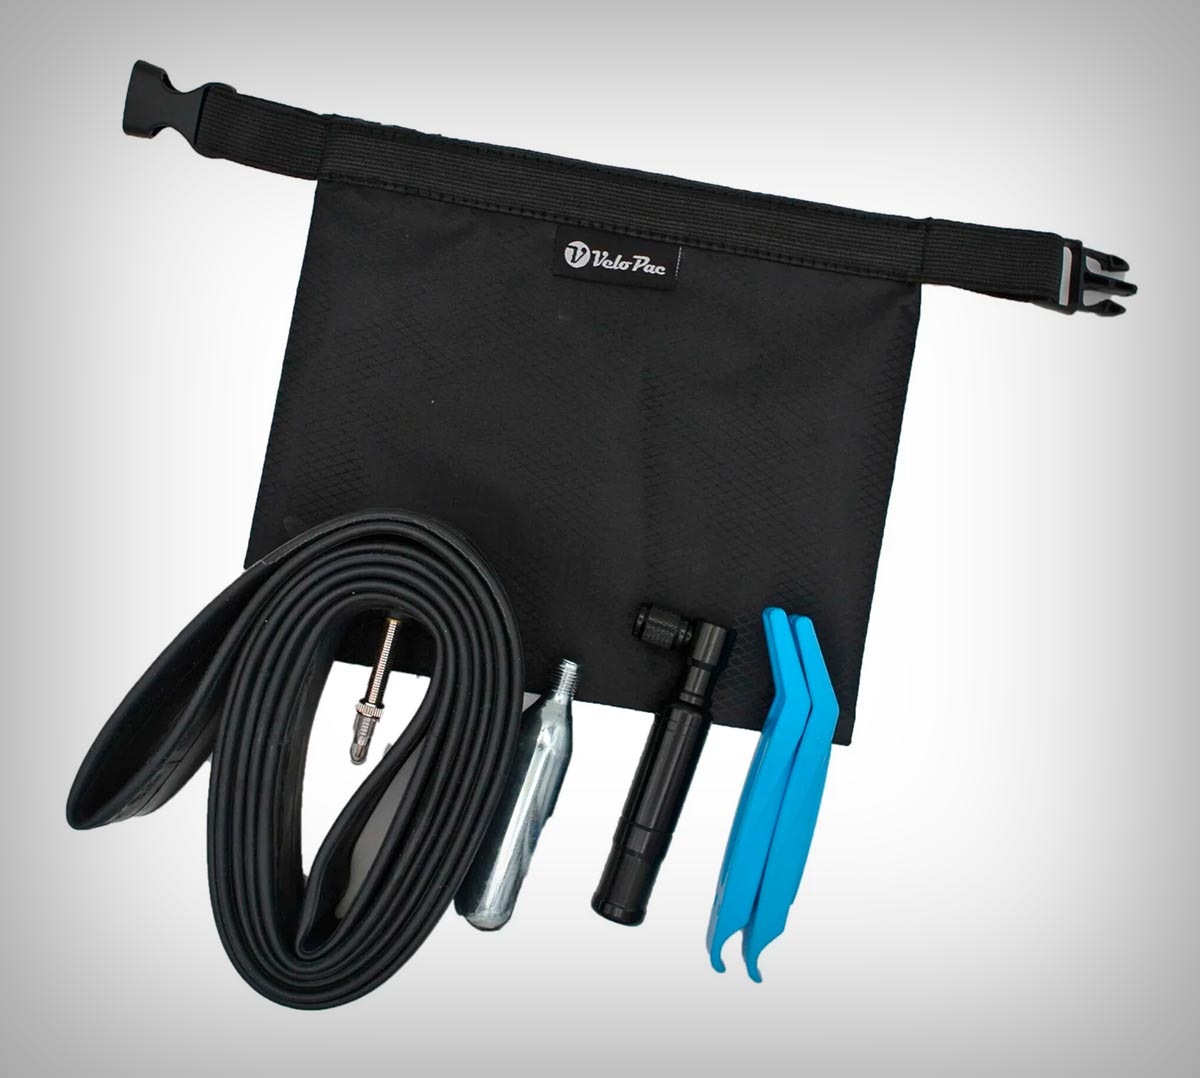 VeloPac RidePac Útil, una bolsa impermeable para llevar todo lo necesario en el bolsillo del maillot (o en la bici)